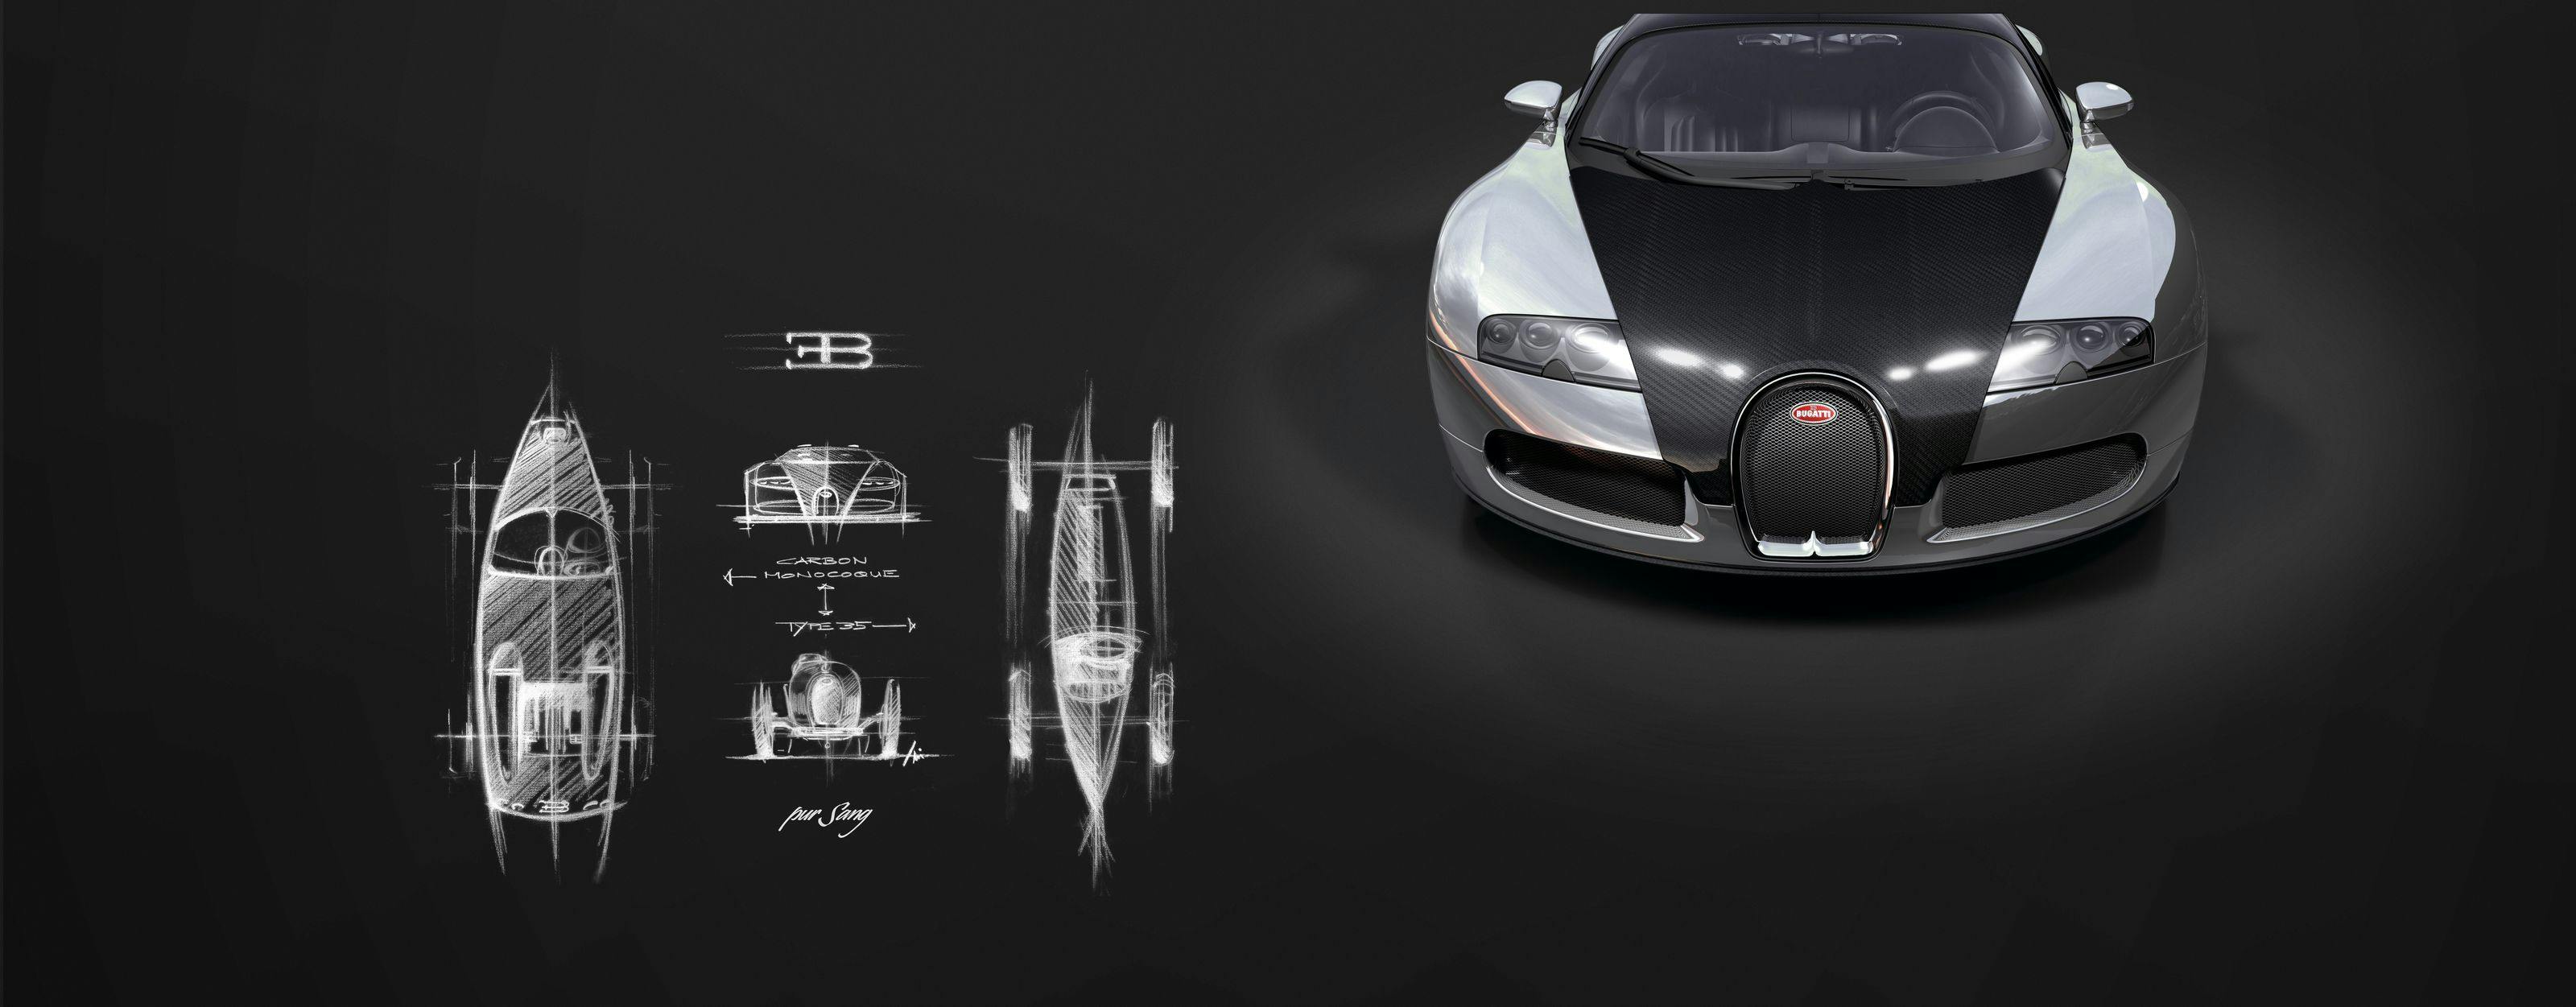 Les 15 ans de la Bugatti Veyron 16.4 – six modèles Veyron inoubliables